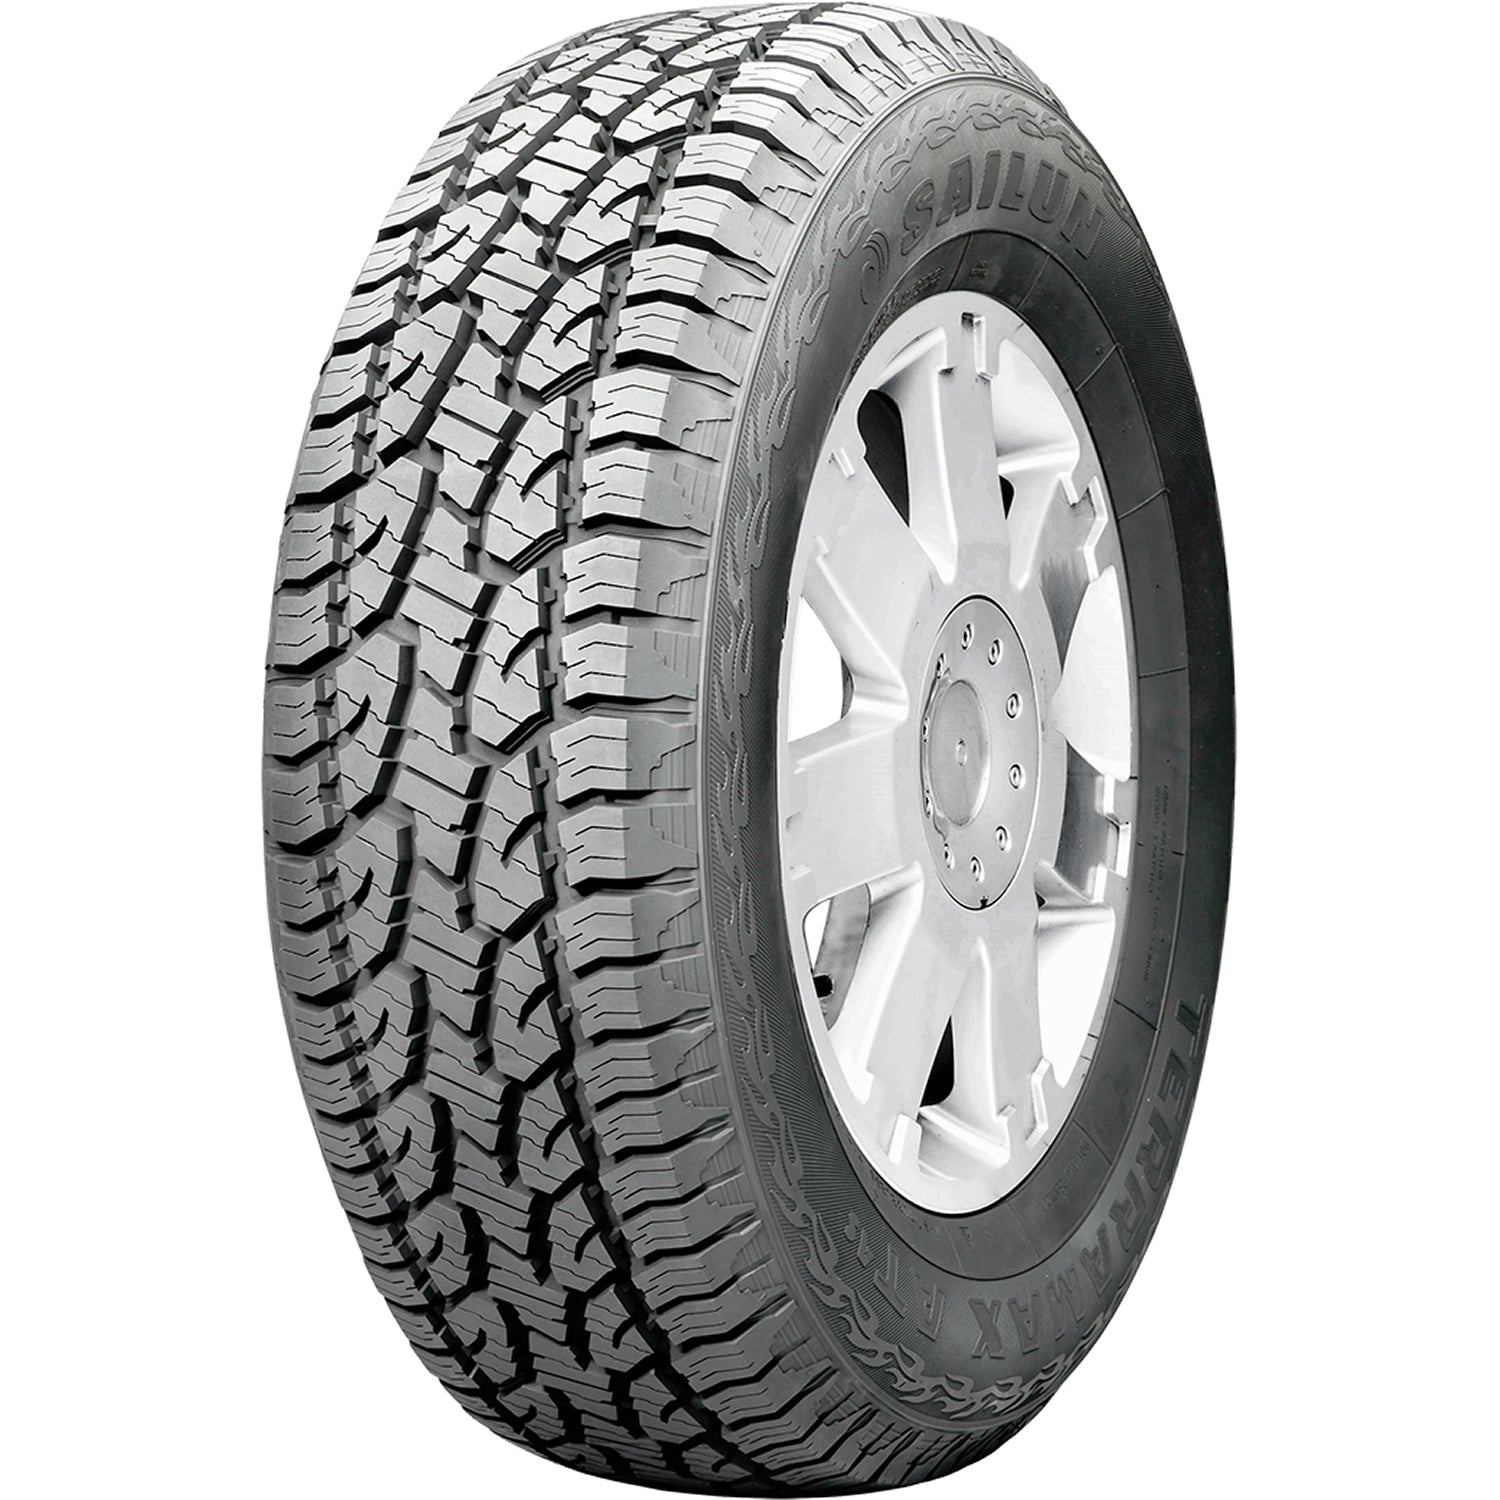 SAILUN TERRAMAX AT 4S 265/75R16 (31.7X10.5R 16) Tires